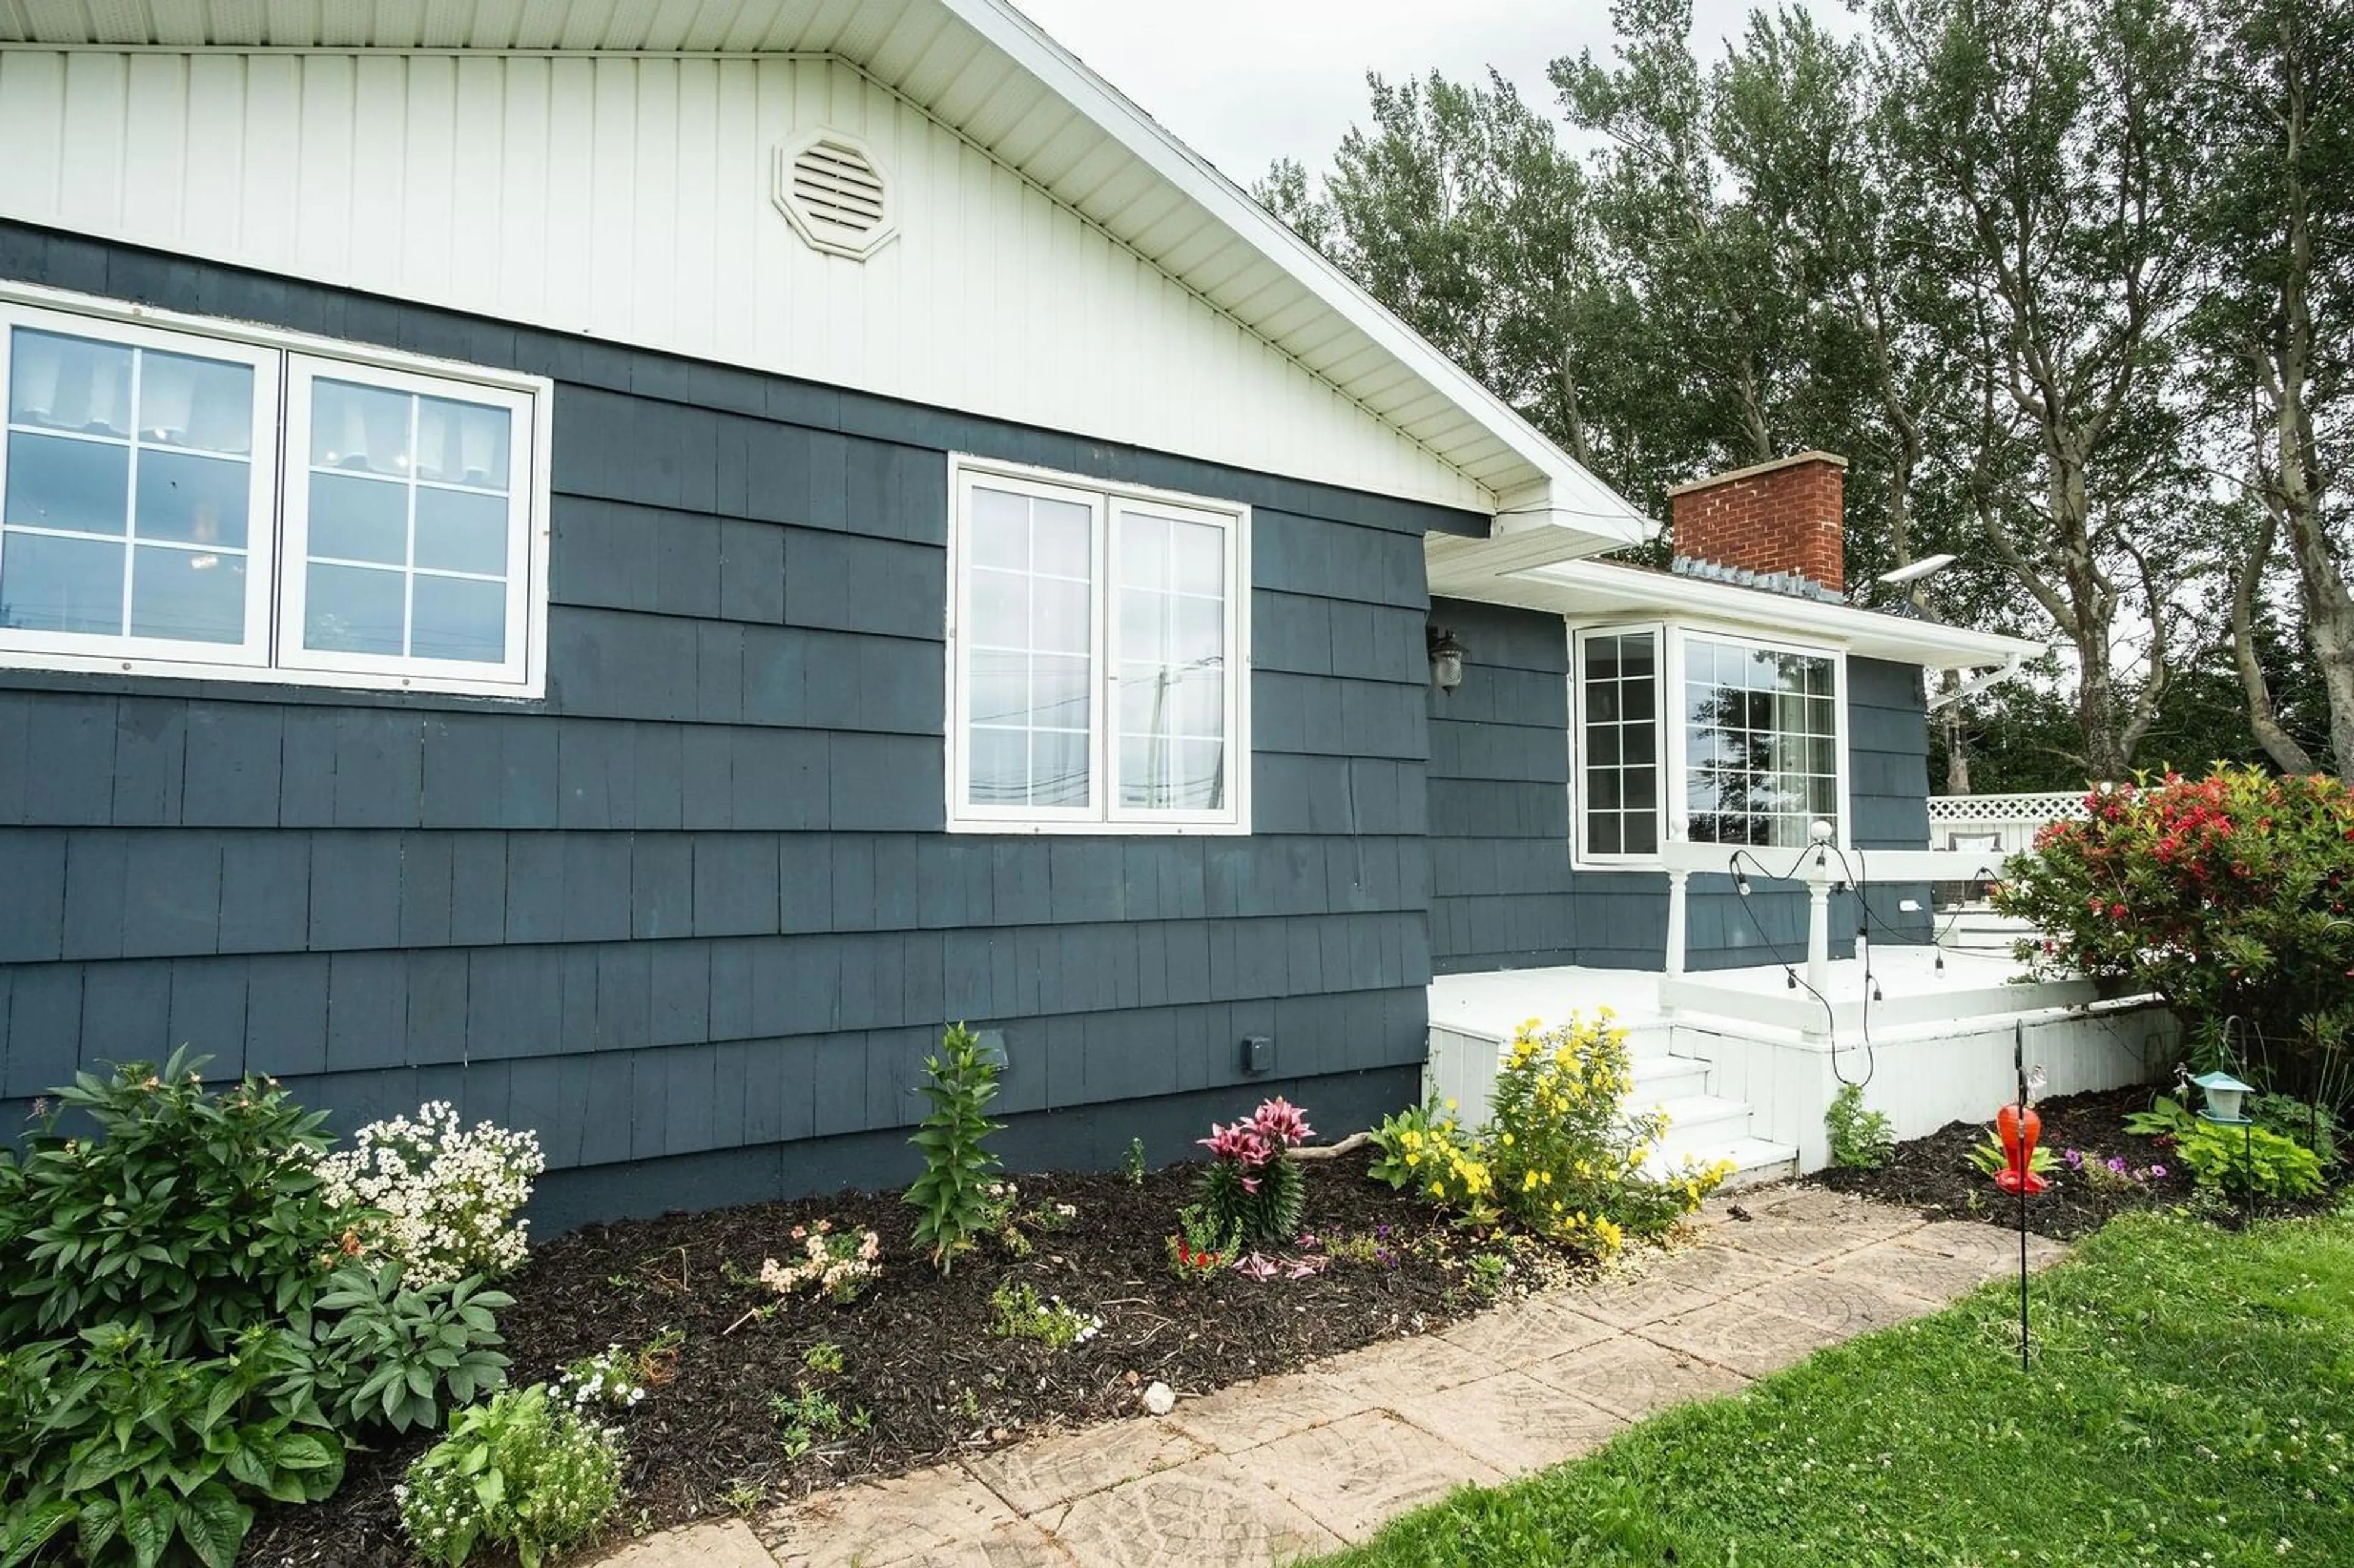 Home with vinyl exterior material for 8532 Highway 19, Port Hood Nova Scotia B0E 2W0